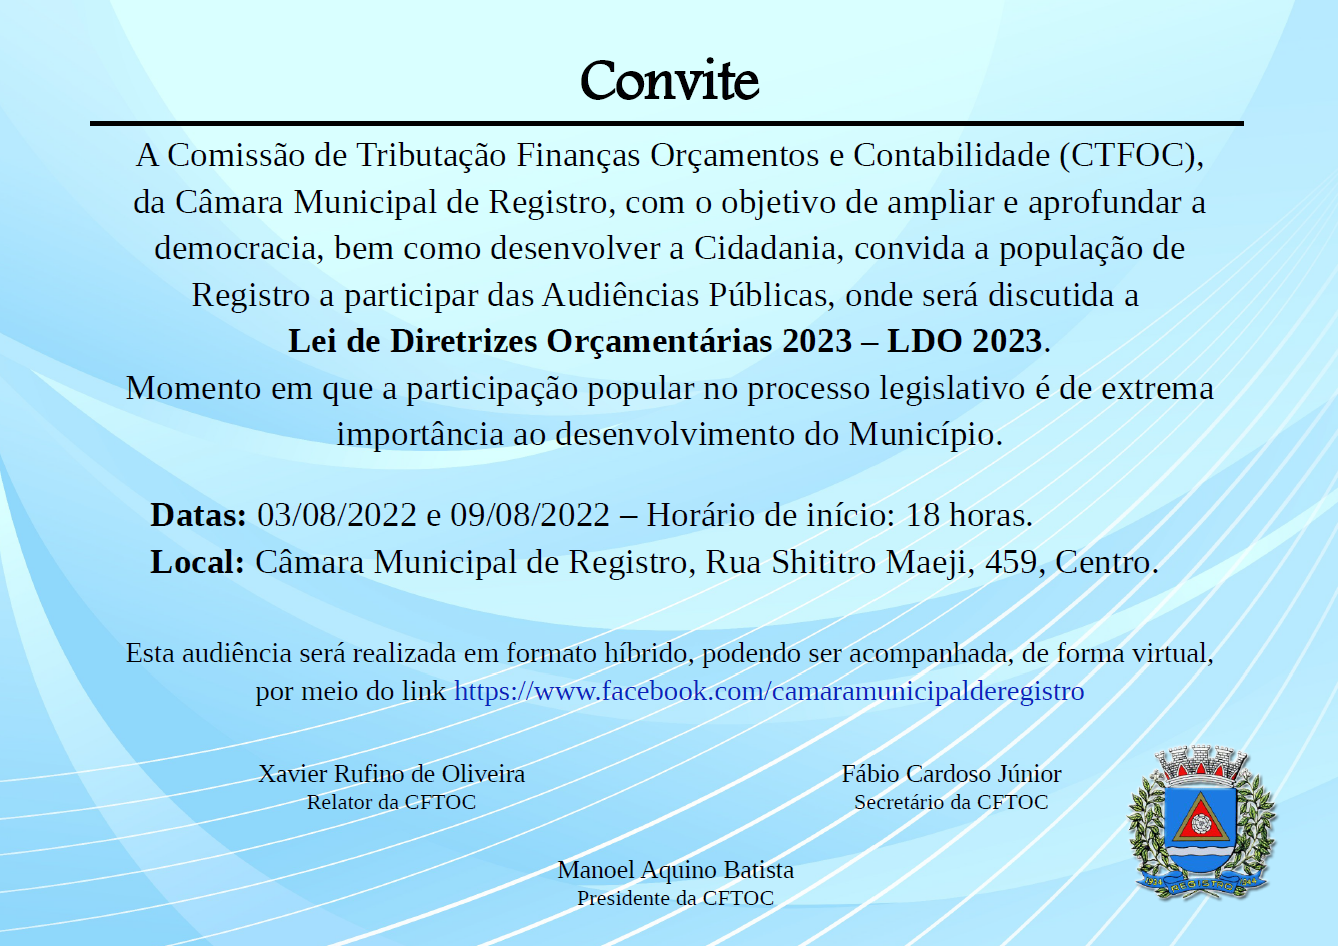 Convite Audiência Pública LDO 2023